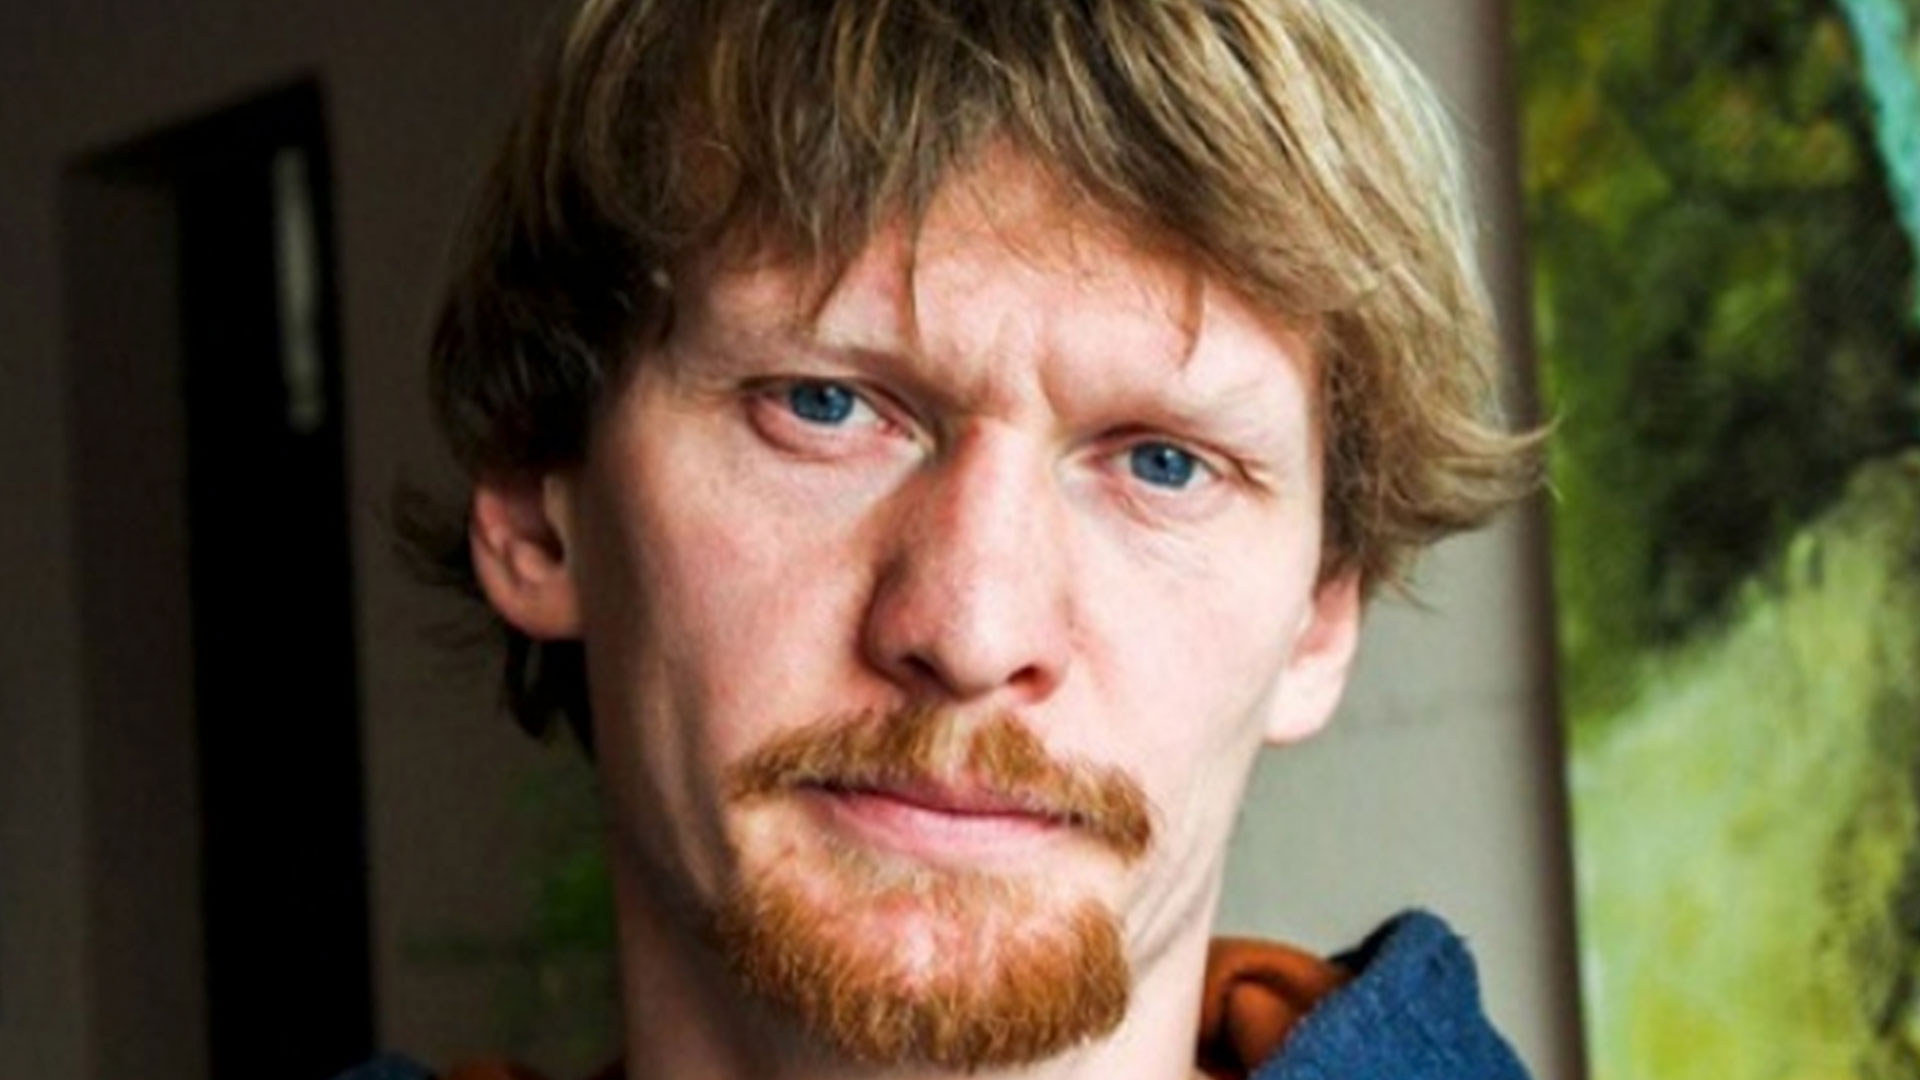 El fotógrafo y documentalista ucraniano Maks Levin fue encontrado muerto cerca de la capital ucraniana, Kiev